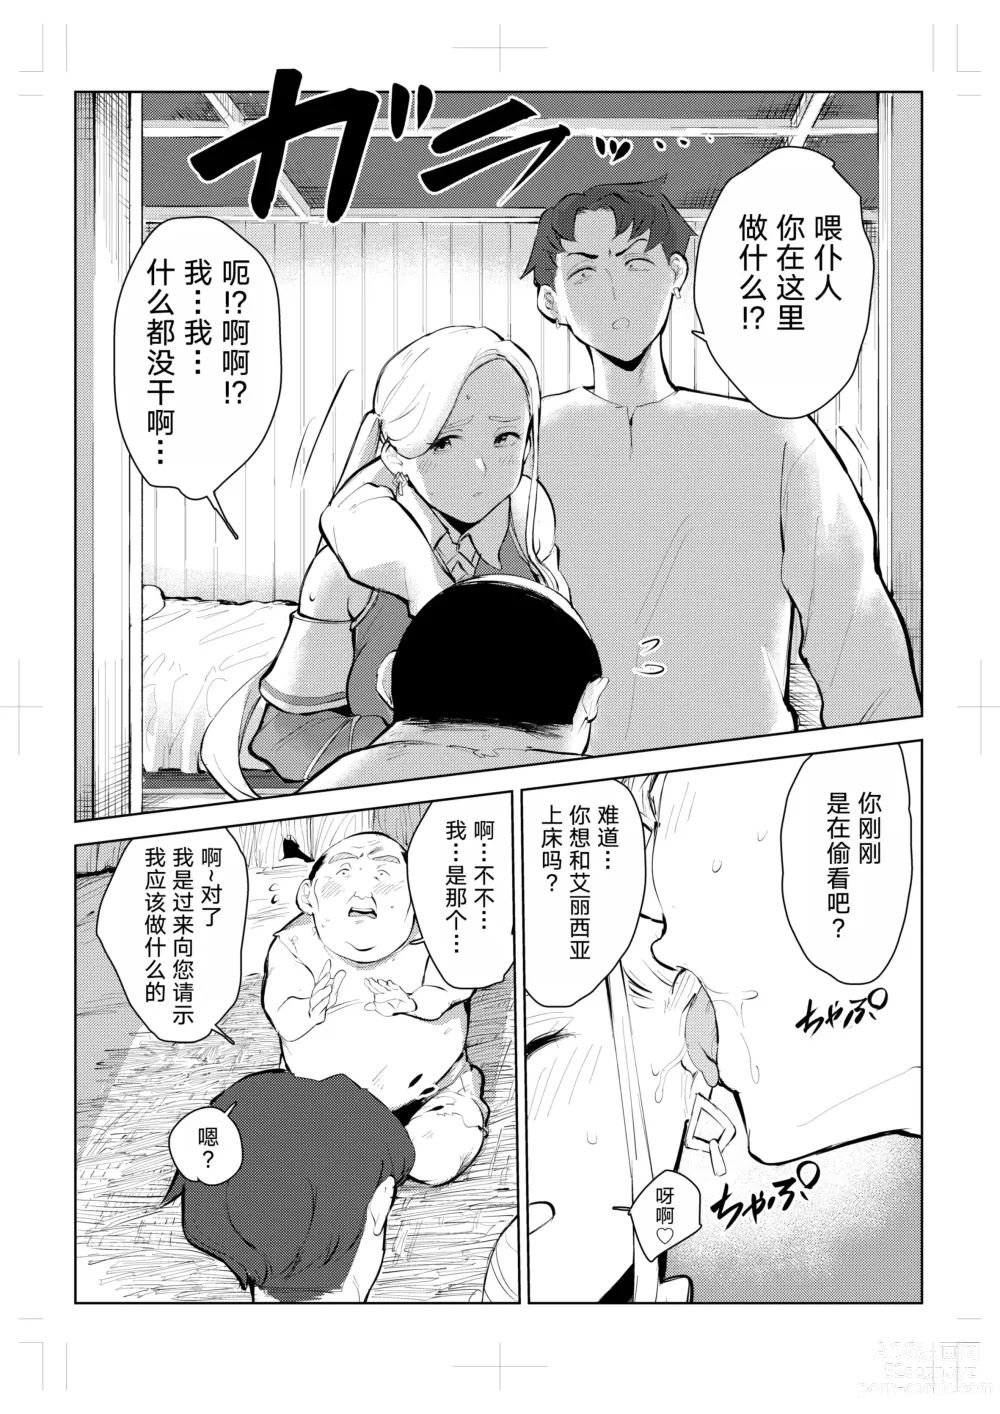 Page 11 of doujinshi 40-sai no Mahoutsukai 0